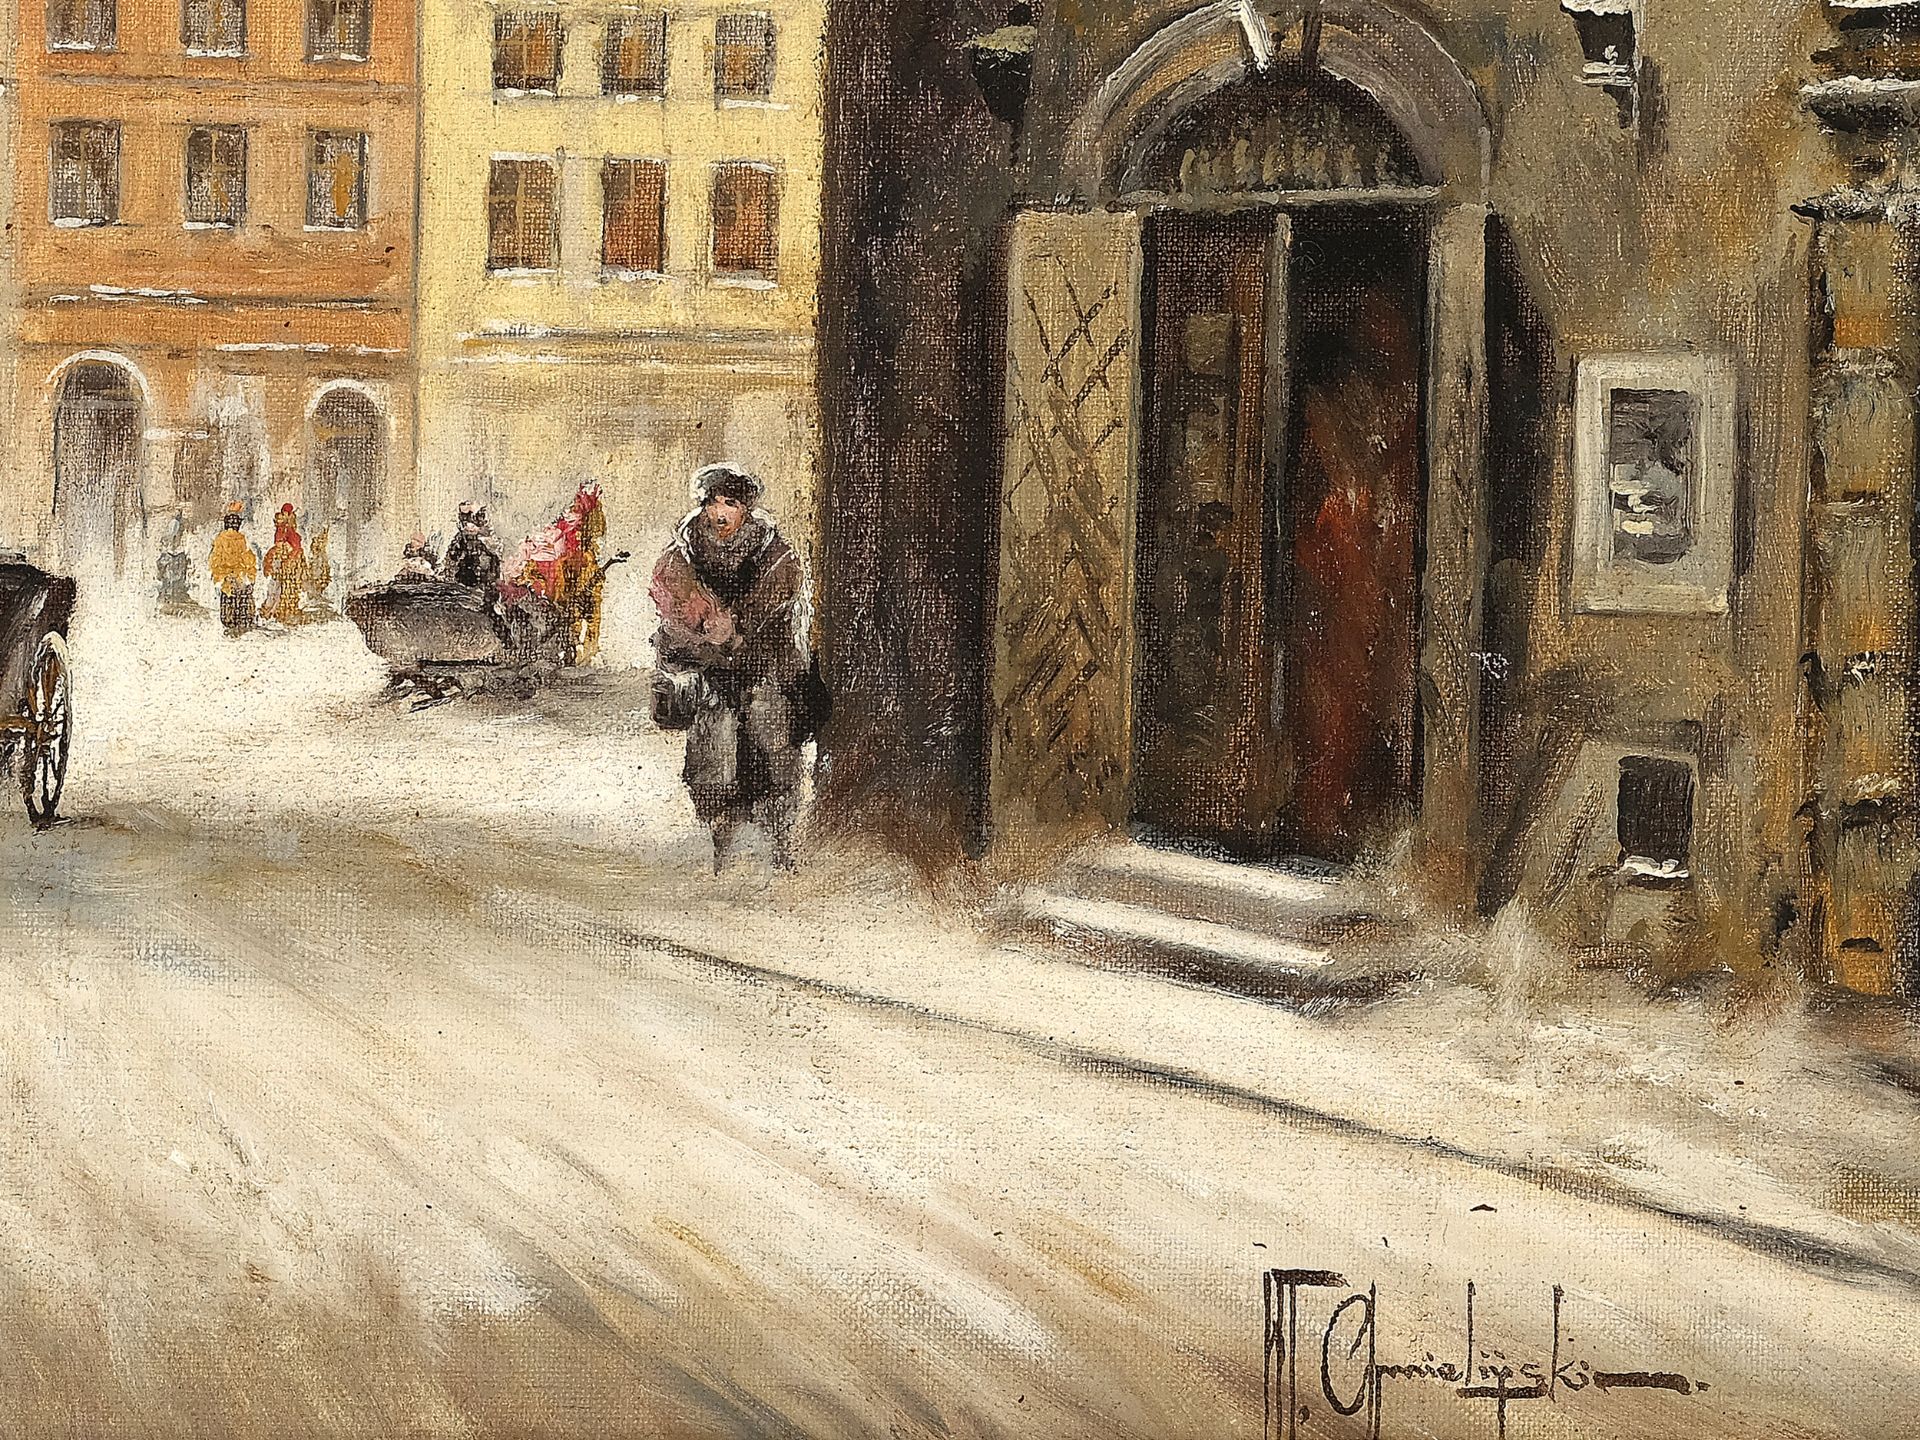 Władysław Chmieliński, Warsaw 1911 - 1979 Warsaw, Warsaw in winter - Image 4 of 5